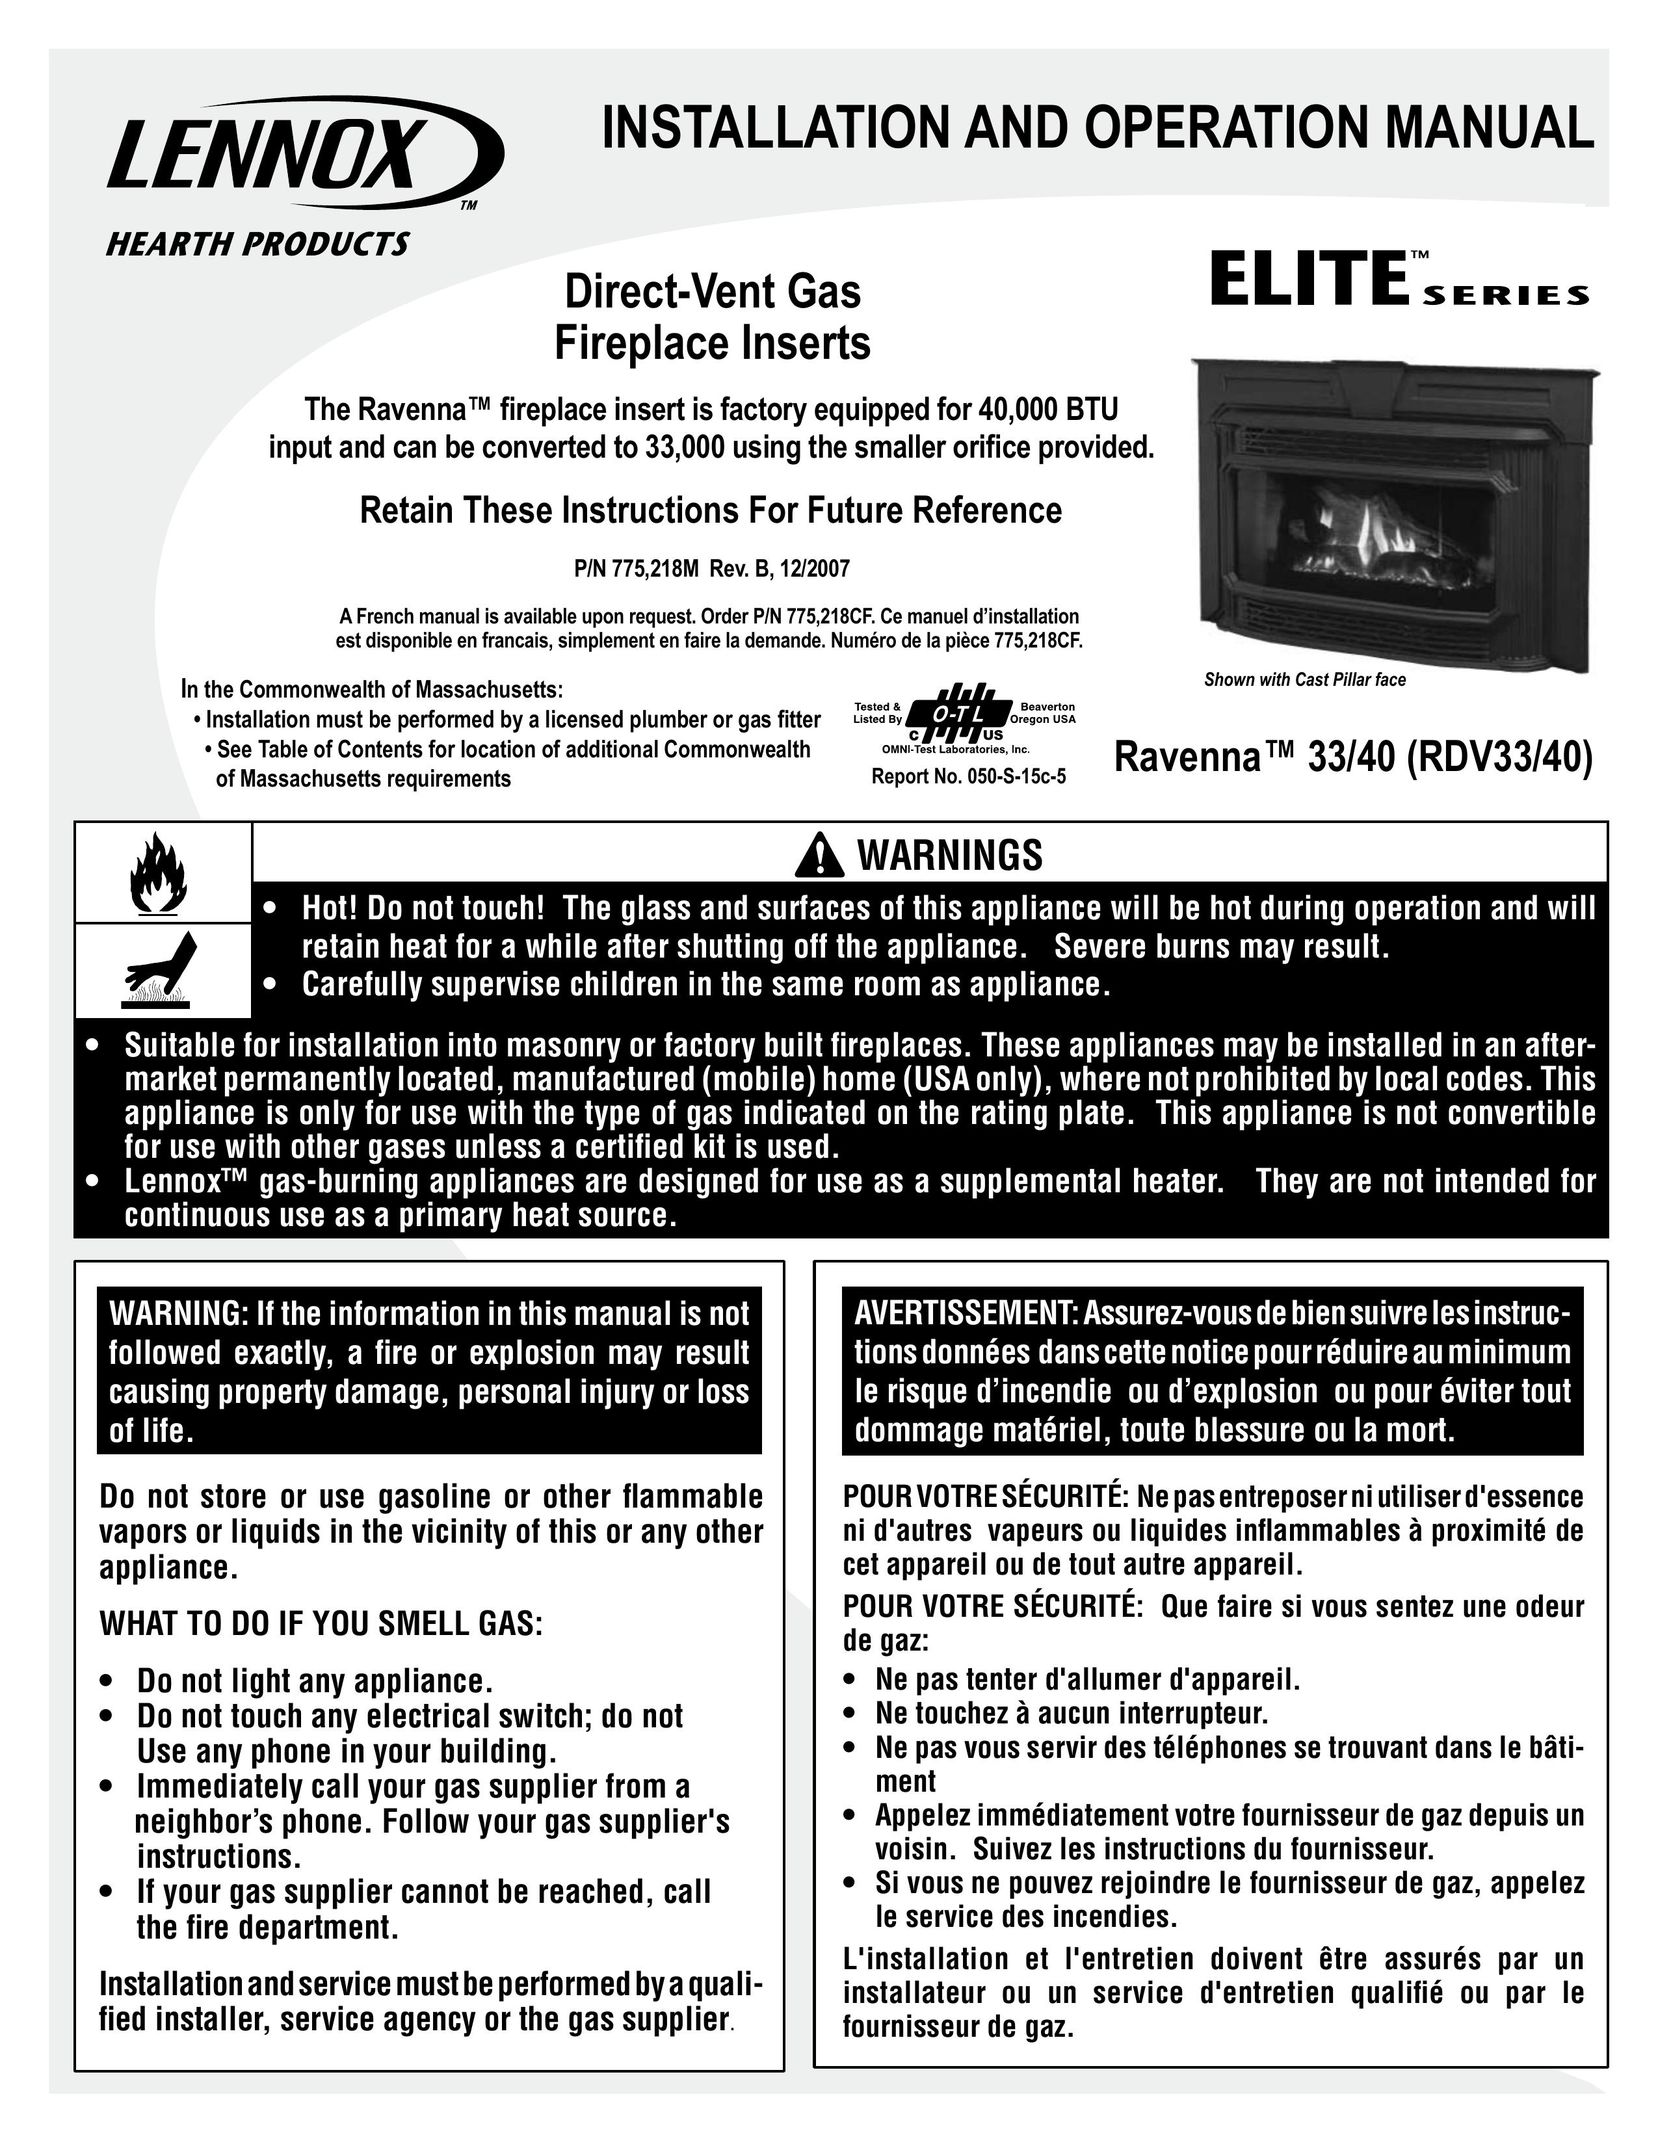 LG Electronics RDV3340 Indoor Fireplace User Manual